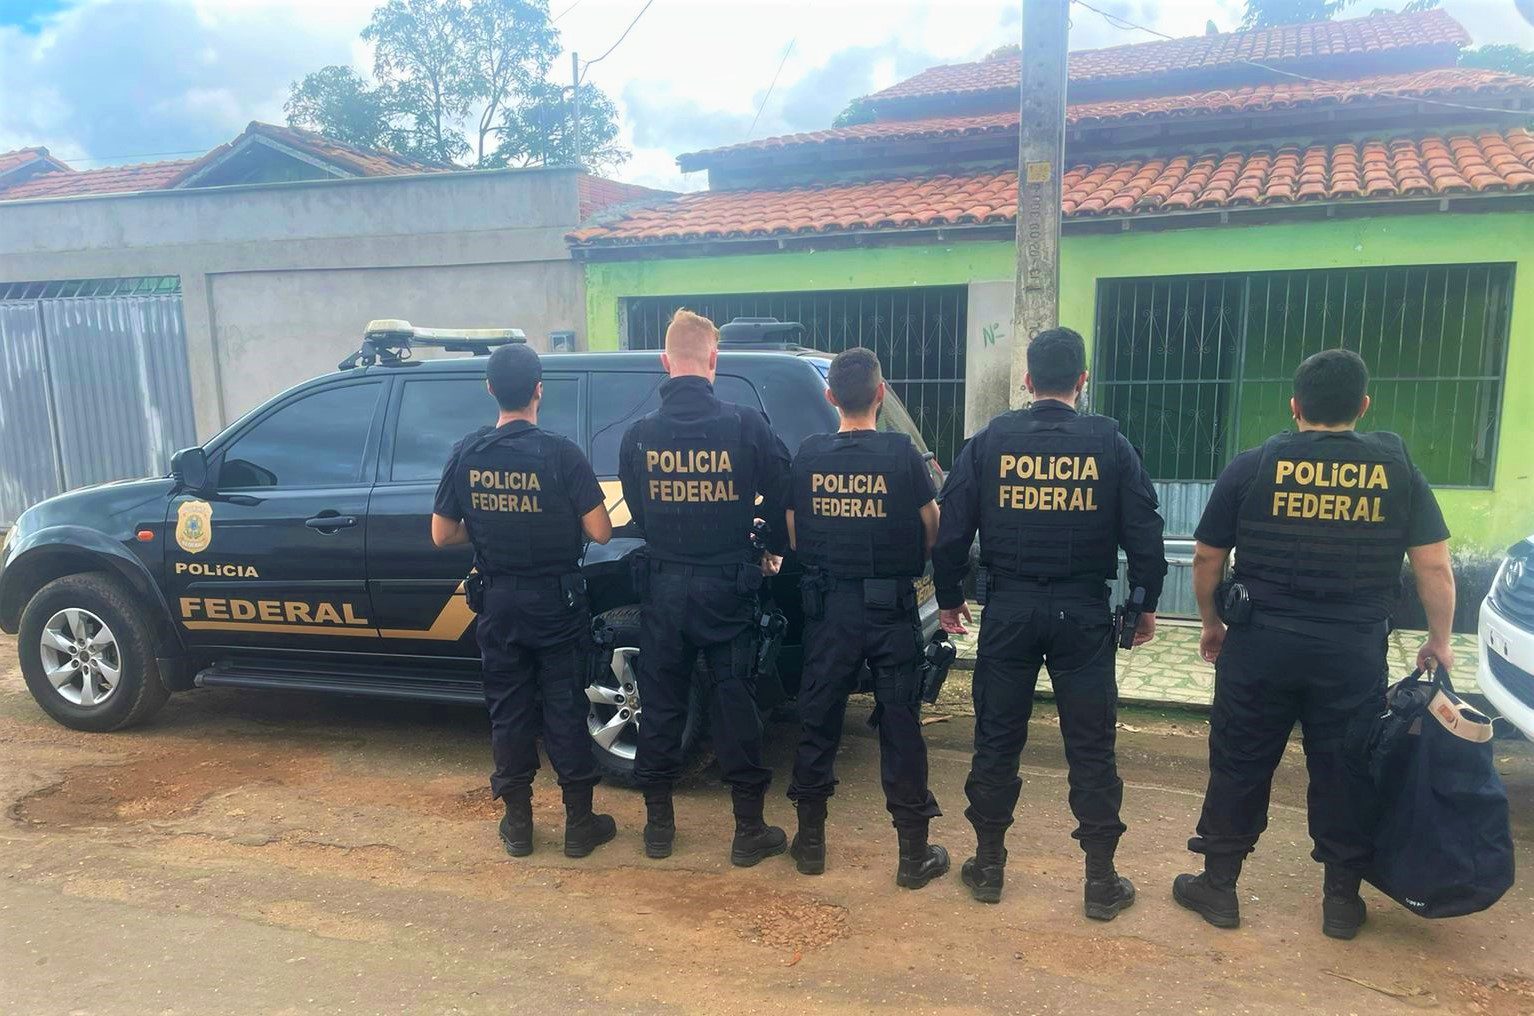 Polícia Federal descobre rede de compartilhamento de material pornográfico no Maranhão